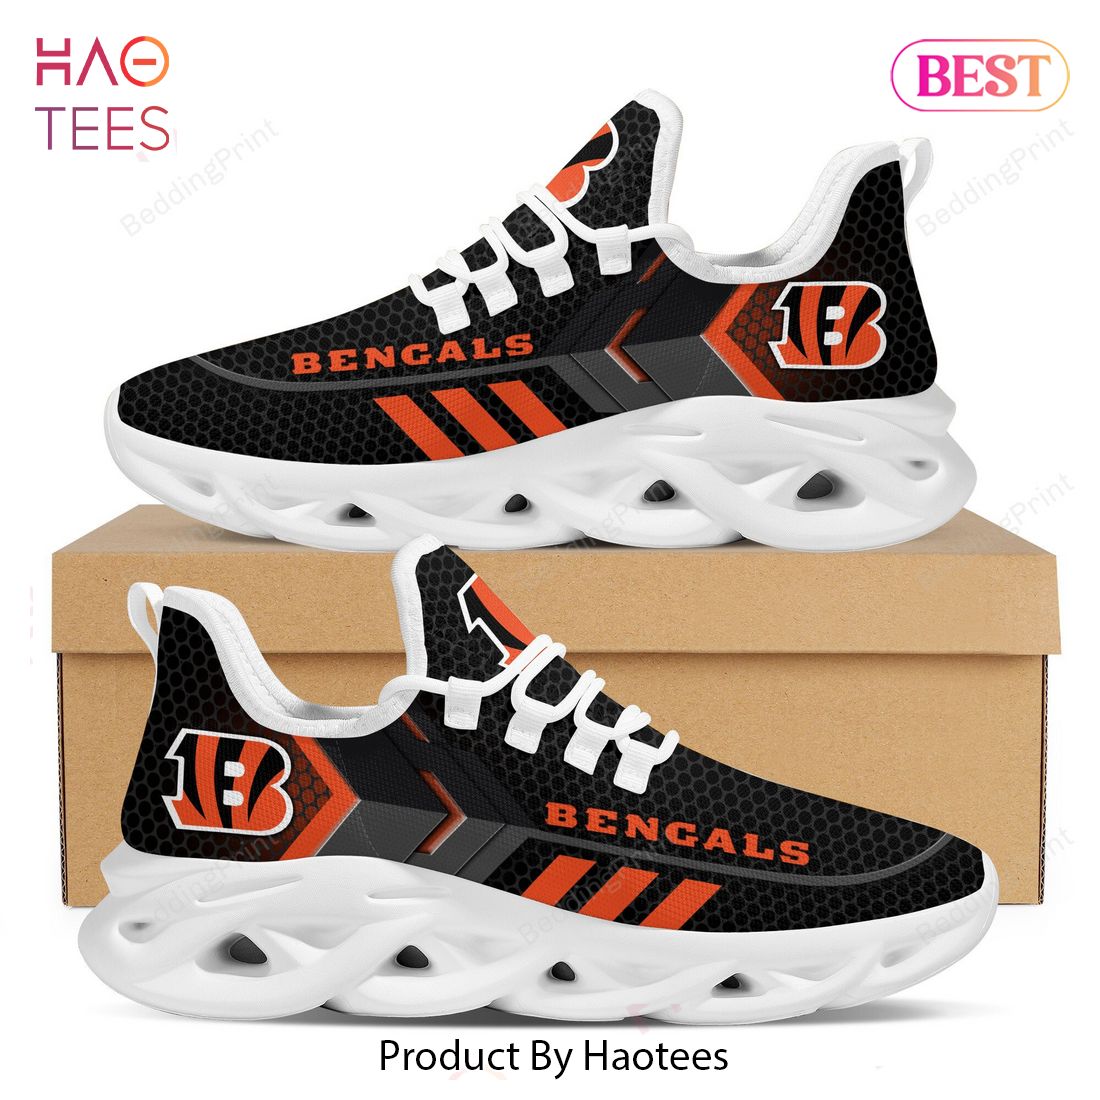 Cincinnati Bengals NFL Trending Black Mix Orange Max Soul Shoes